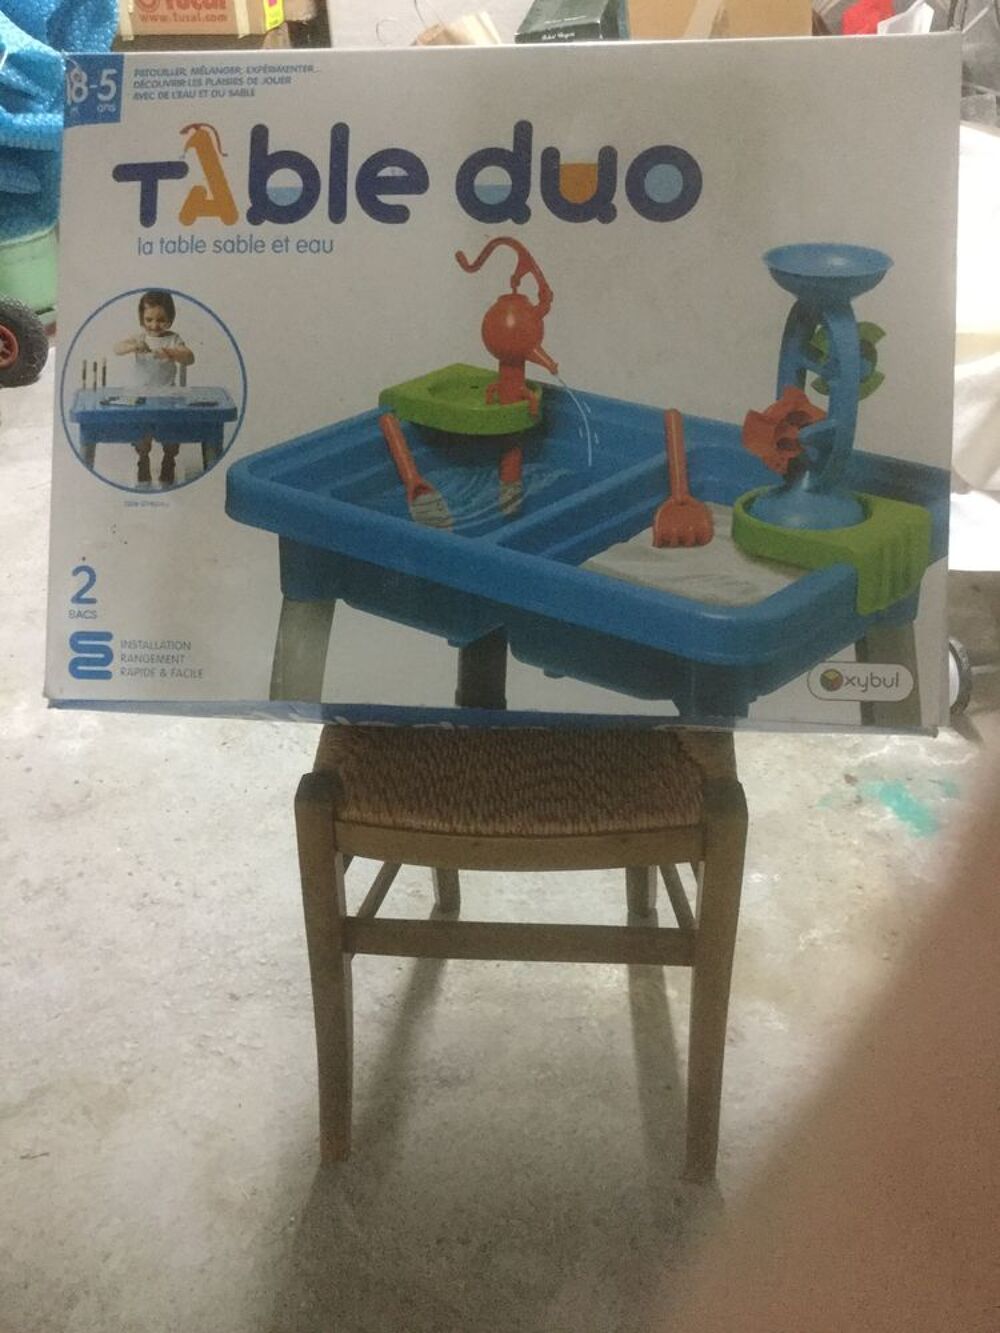 Table duo eau et sable Jeux / jouets